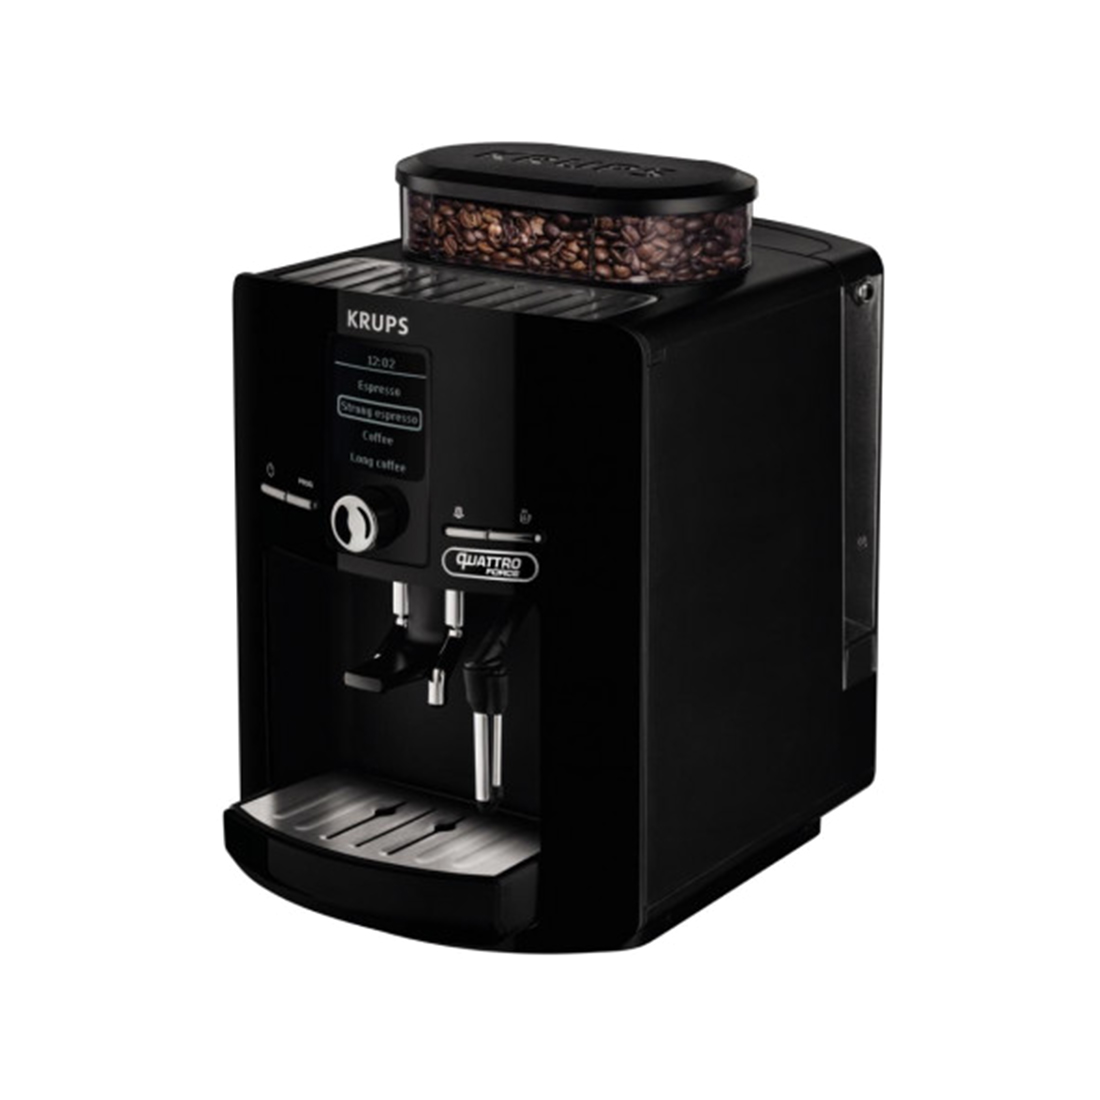 Автоматическая кофемашина, KRUPS, EA82F010, Мощность 1450 Вт, Давление 15 бар, Количество рецептов: 